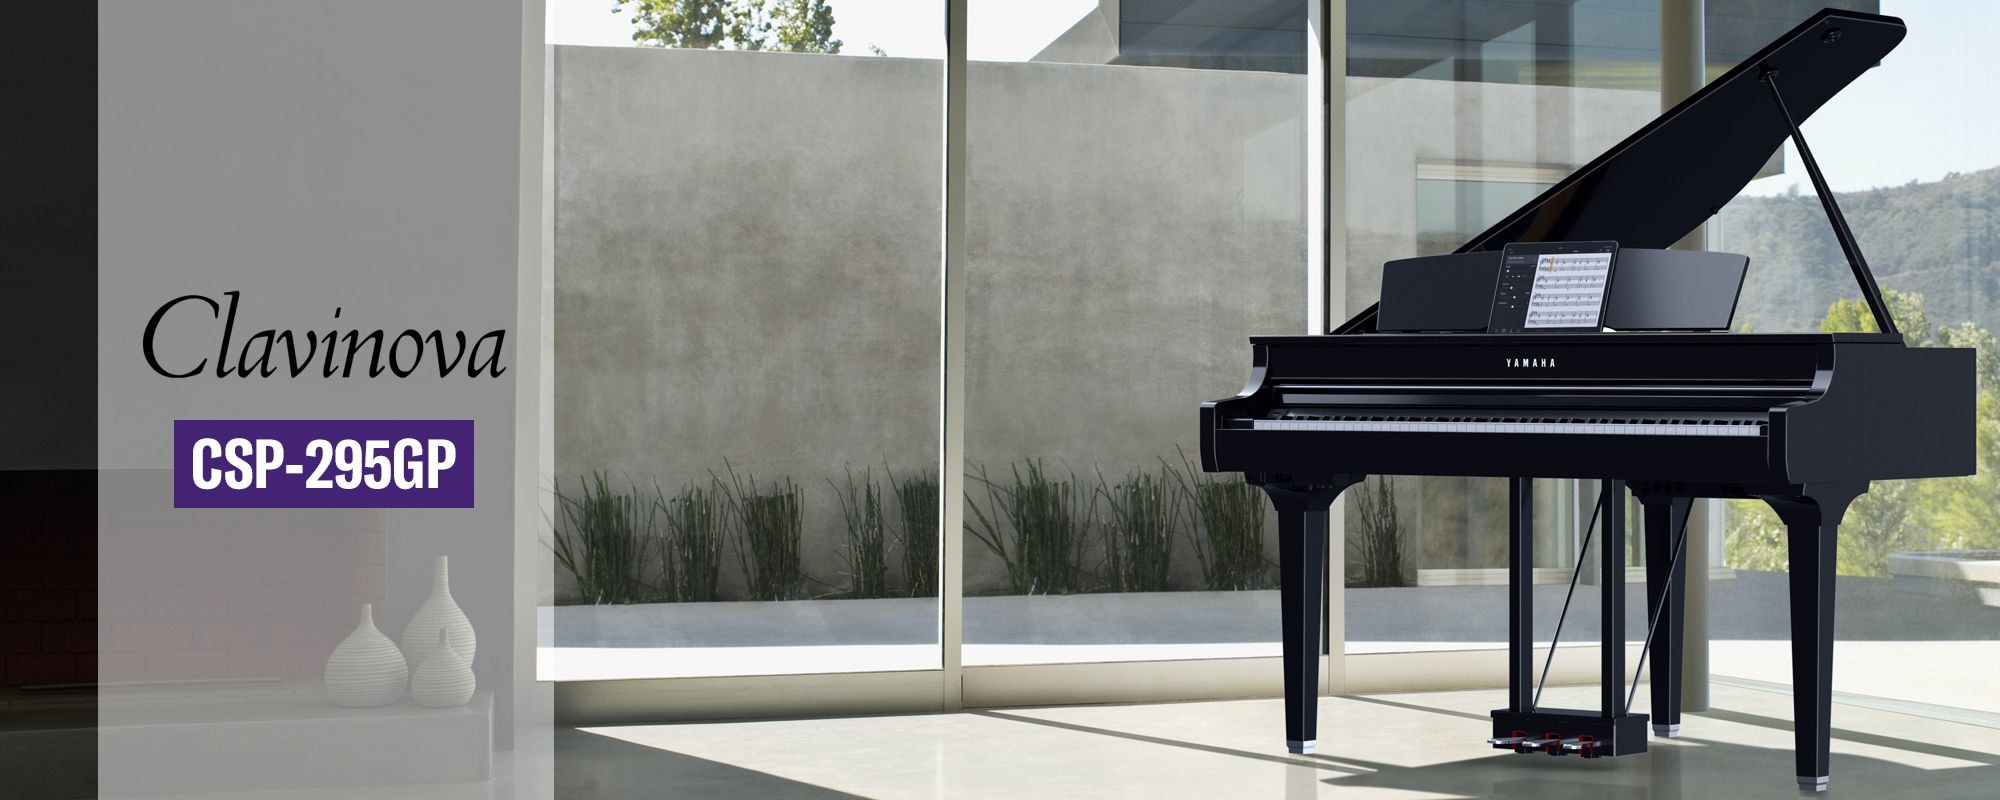 Lifestyle image of polished ebony Yamaha Clavinova CSP-295GP Digital Piano